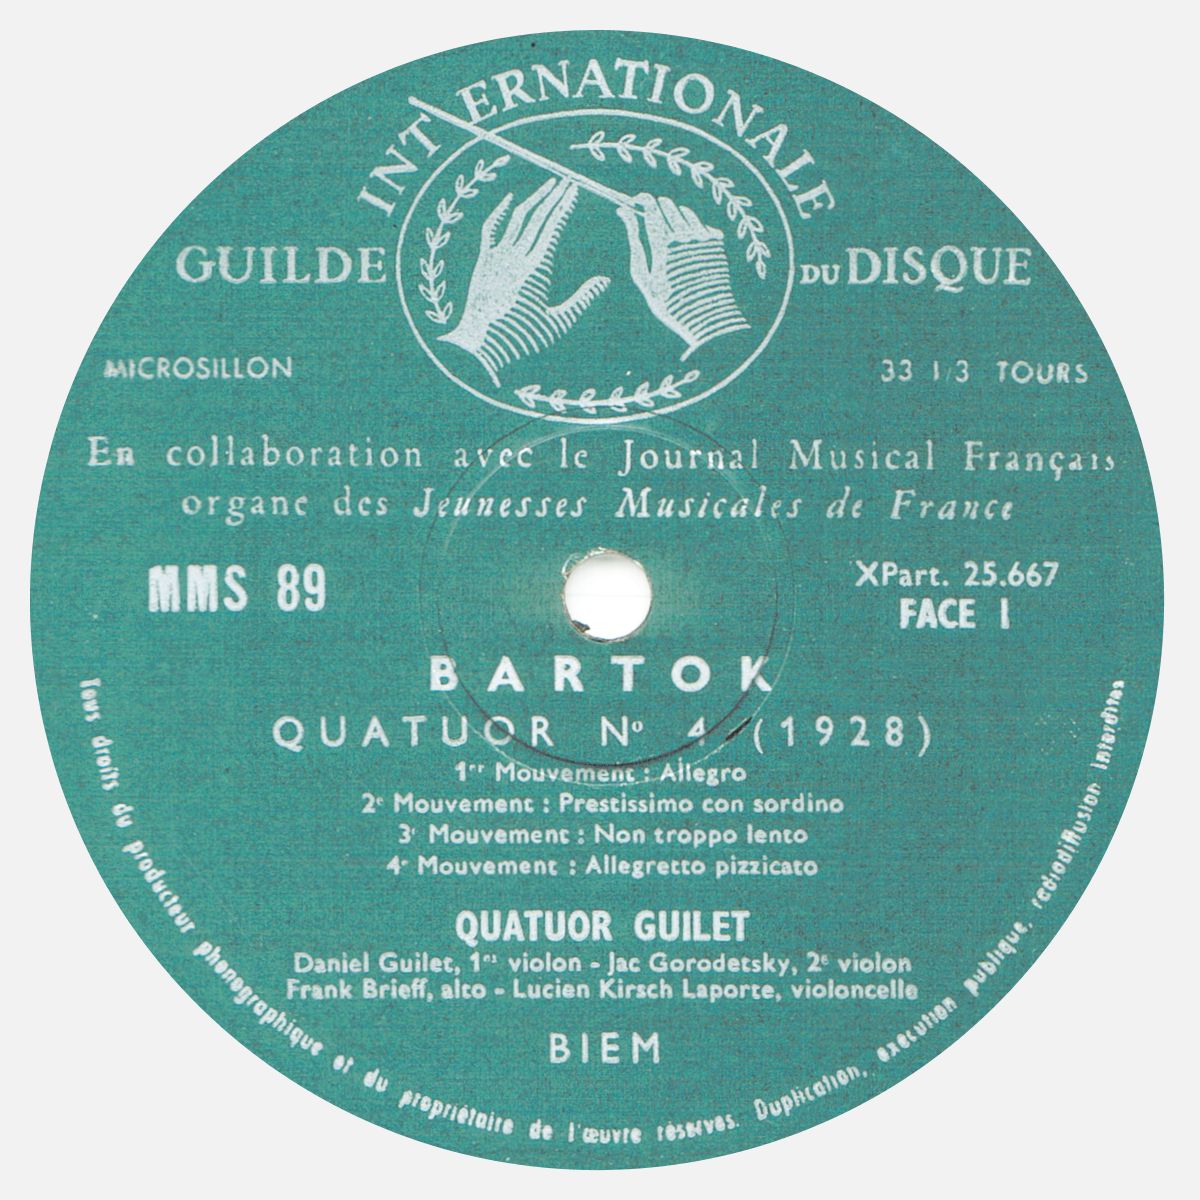 Étiquette recto du disque MMS-89, édition française, cliquer pour une vue agrandie